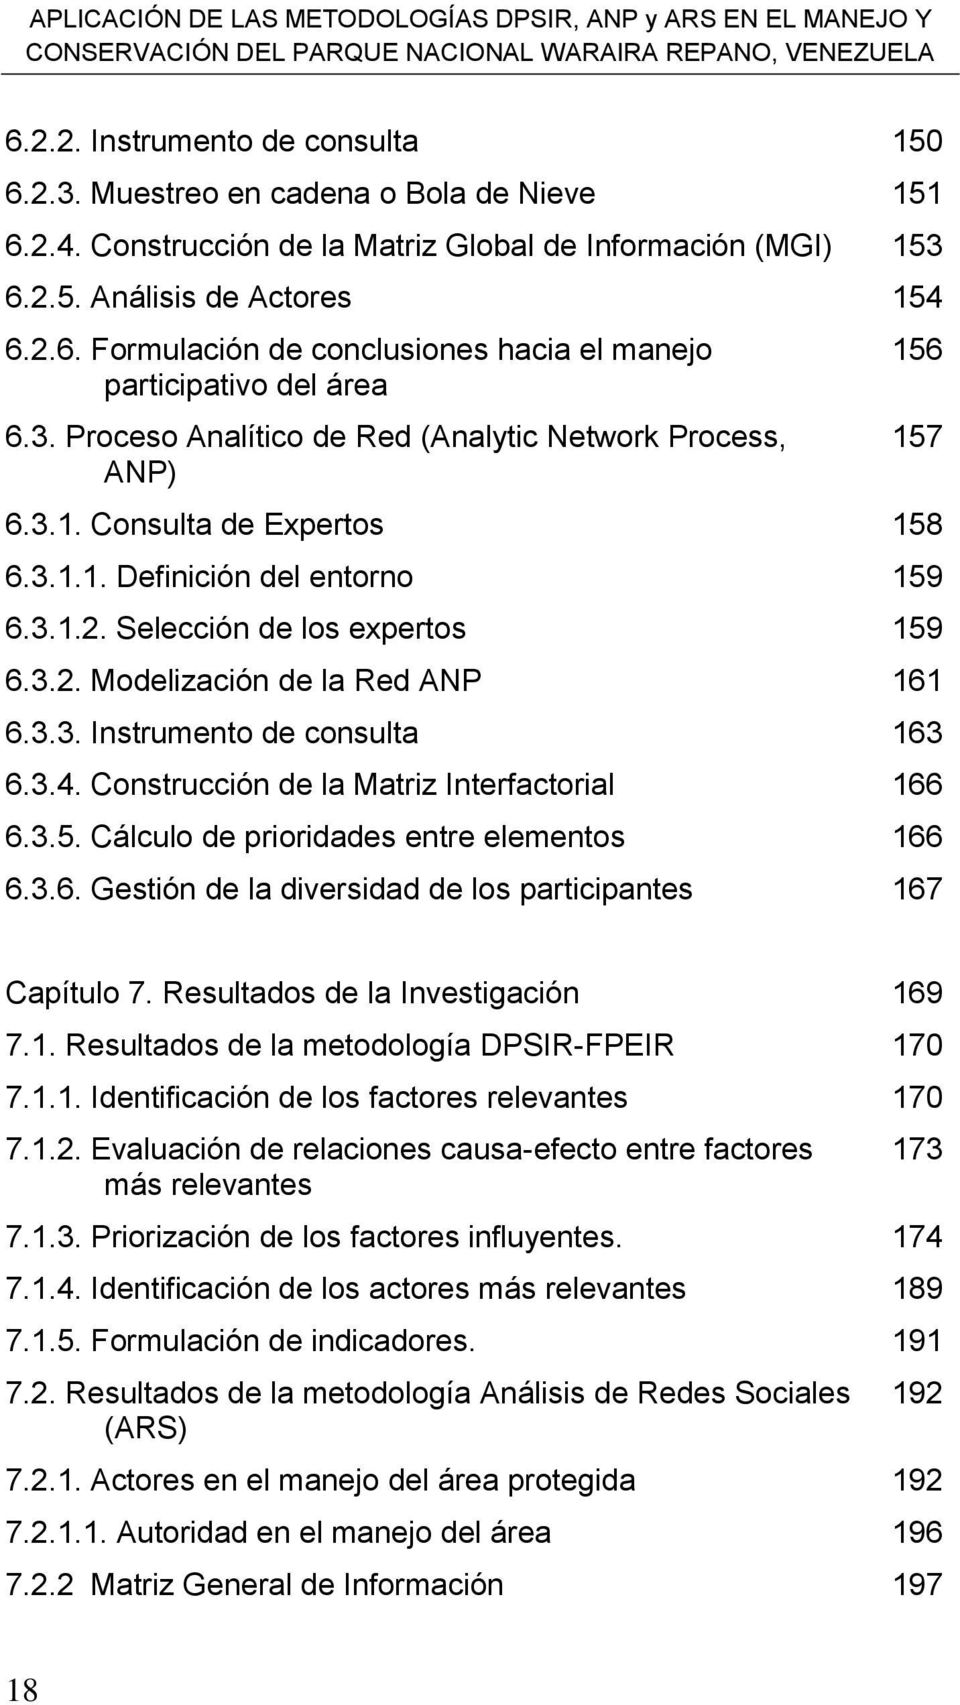 3. Proceso Analítico de Red (Analytic Network Process, ANP) 156 157 6.3.1. Consulta de Expertos 158 6.3.1.1. Definición del entorno 159 6.3.1.2. Selección de los expertos 159 6.3.2. Modelización de la Red ANP 161 6.